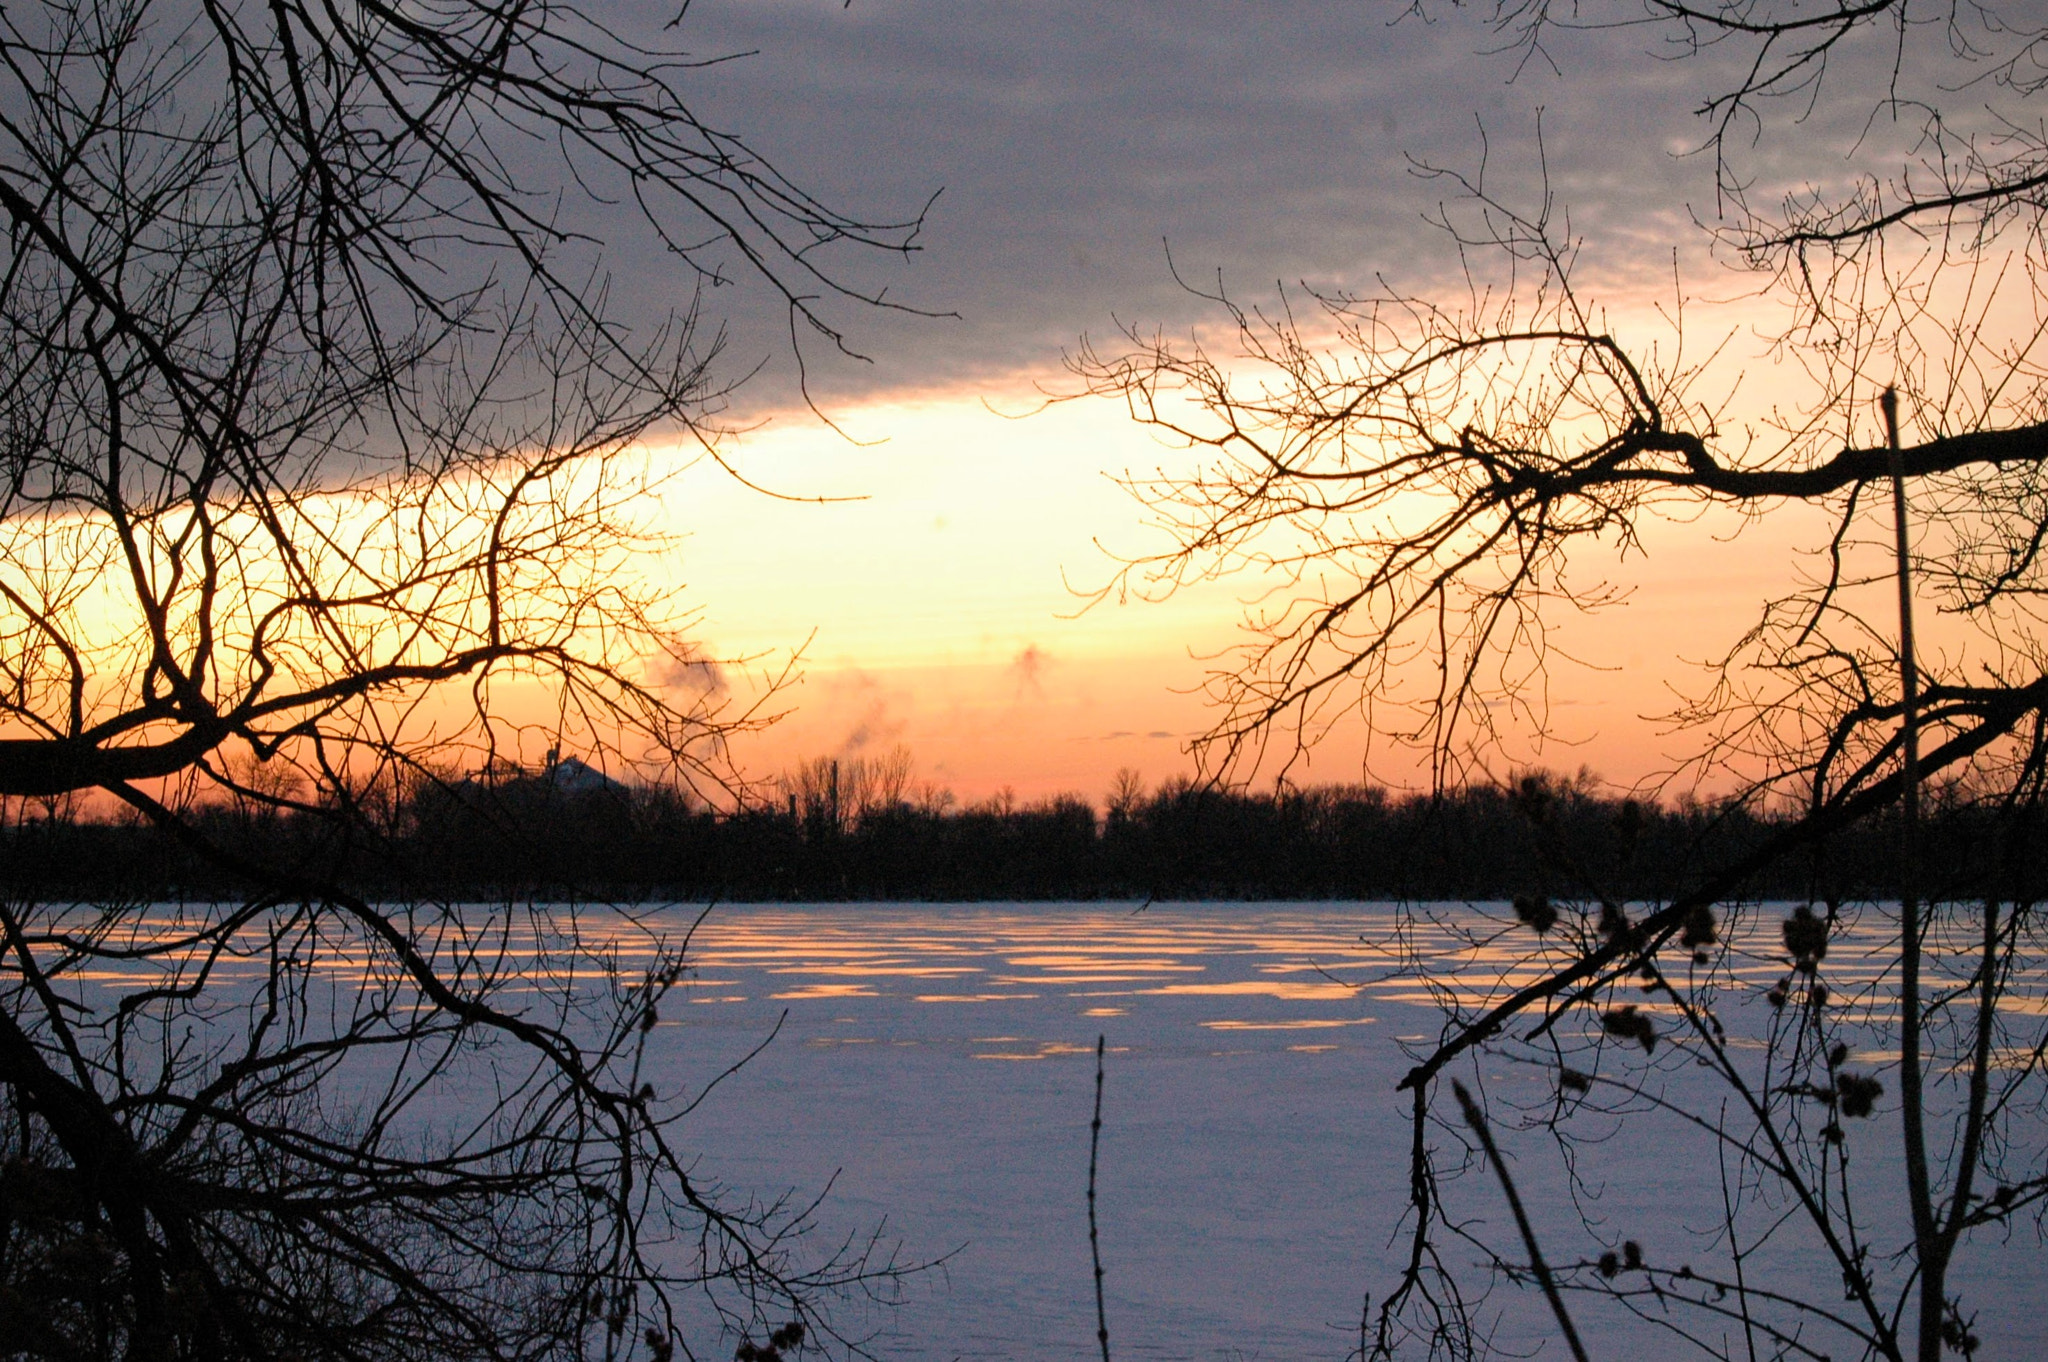 Nikon D70 sample photo. Predawn over a frozen lake photography